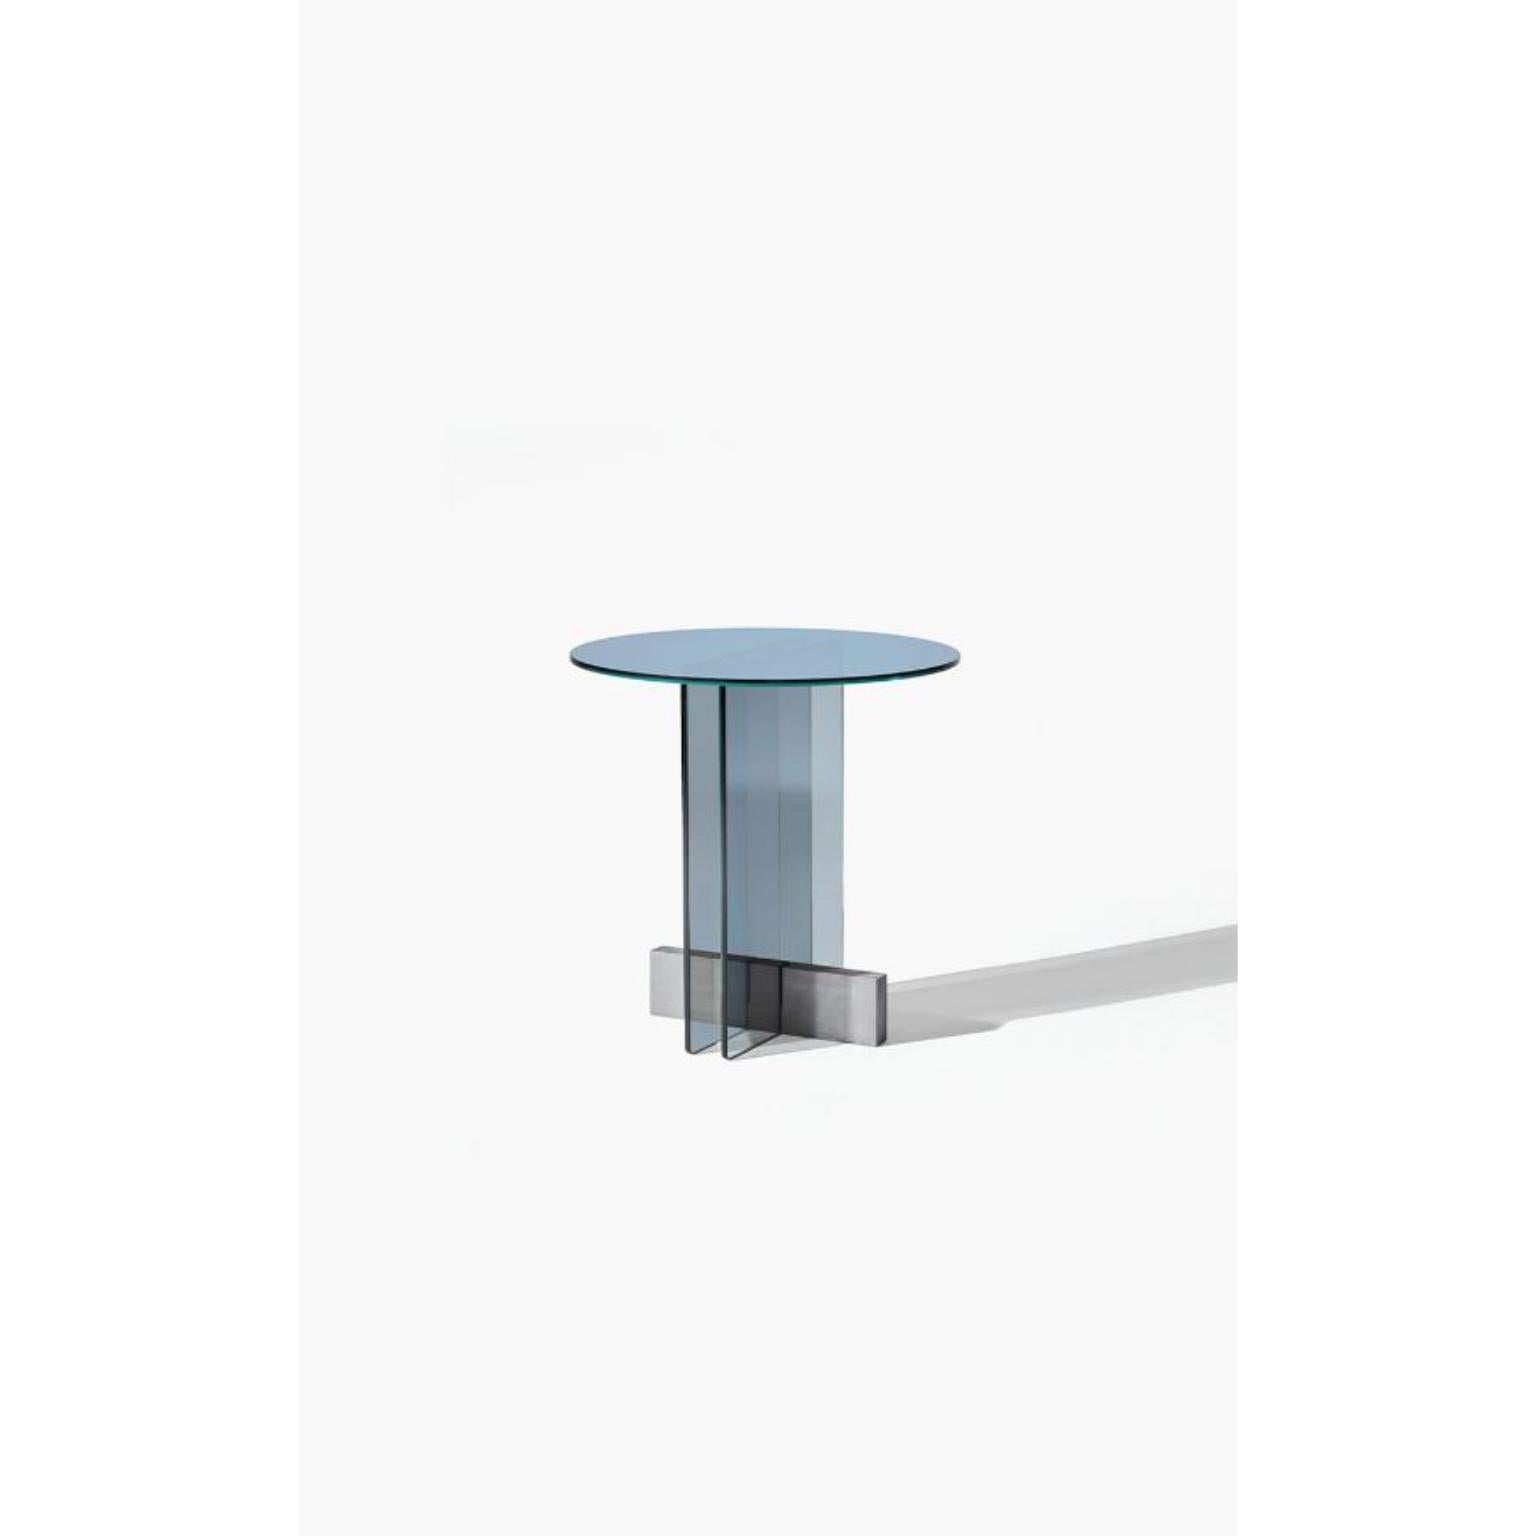 Table d'appoint Vidro L par WENTZ
Dimensions : D 60 x L 60 x H 50 cm
MATERIAL : verre, bois.
Poids : 17,2kg / 38 lbs

La recherche constante de légèreté sous différentes formes a conduit à un nouveau projet dont le verre est le protagoniste. Le